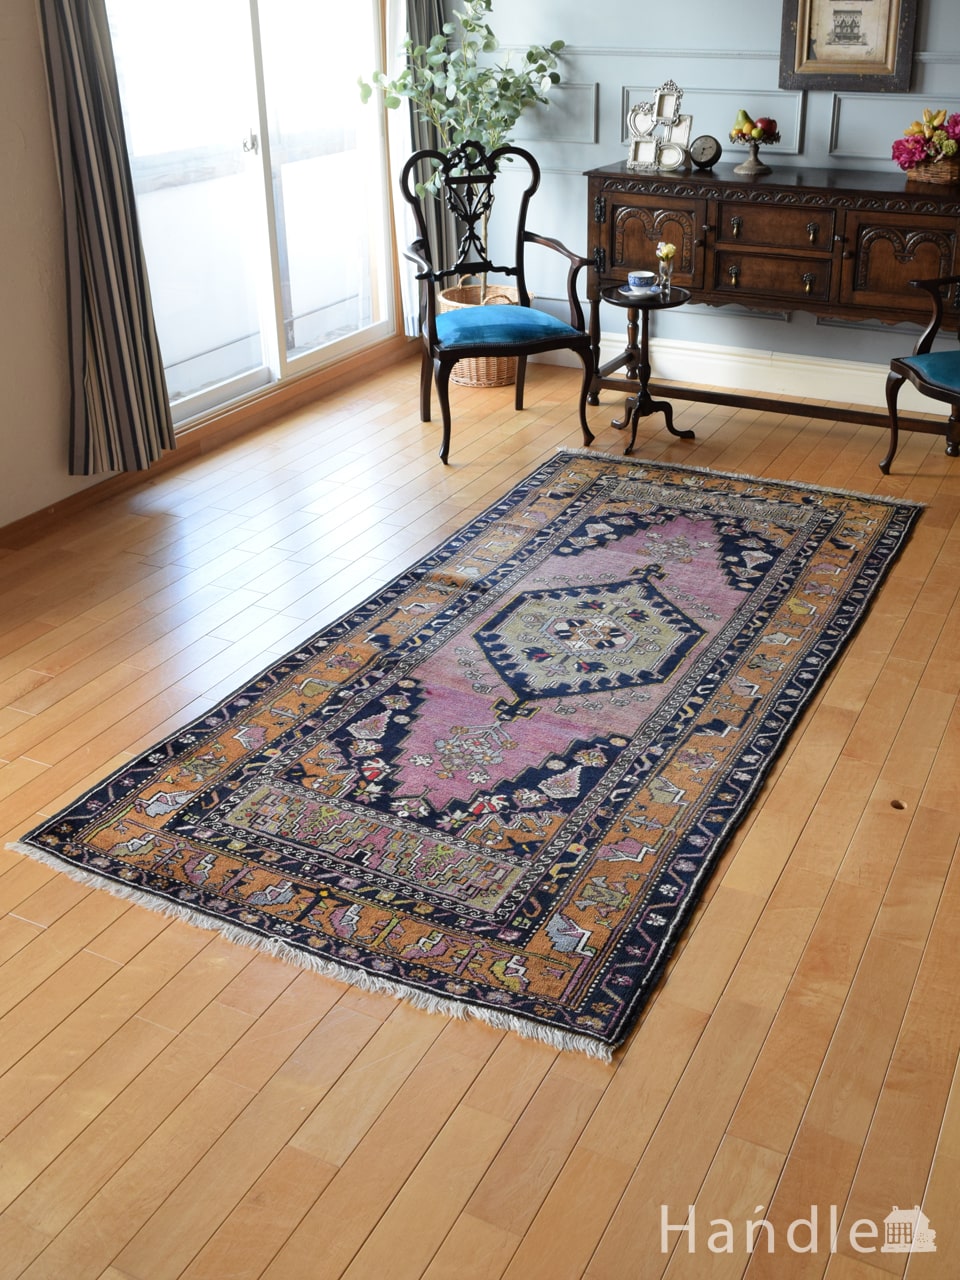 トルコアクサライのおしゃれな絨毯、一点もののビンテージトライバルラグ (m-5087-z)